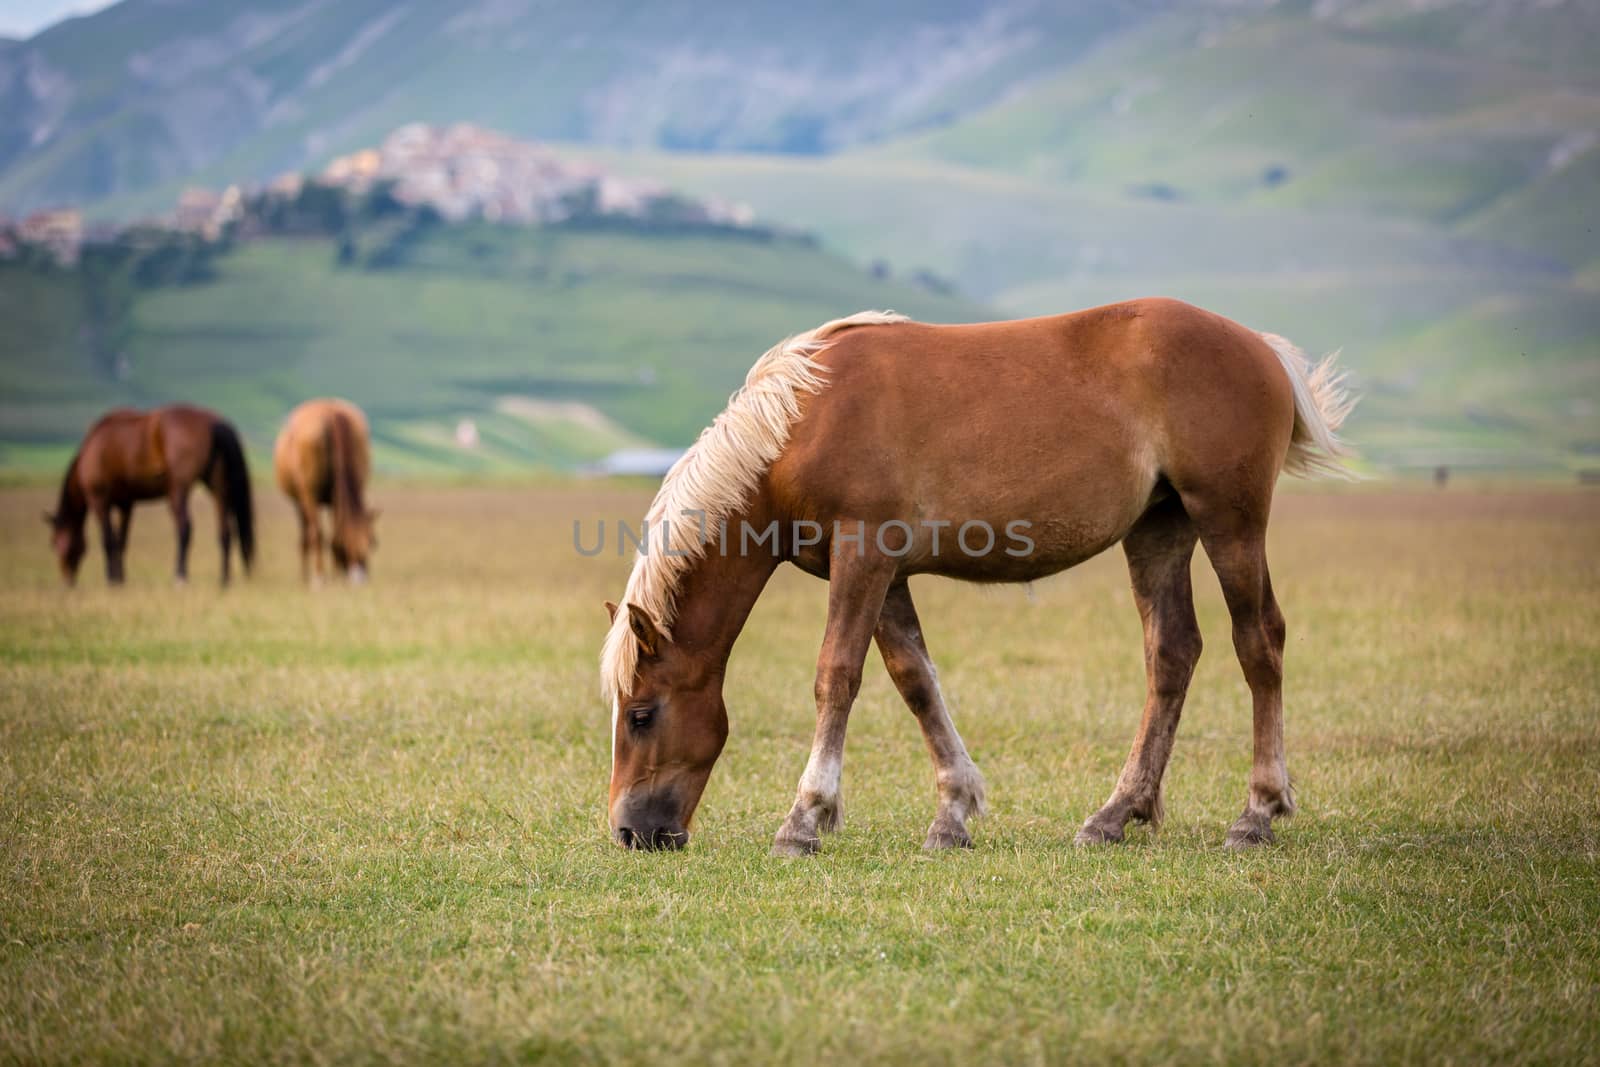 Horse at Piano Grande, Castelluccio di Norcia, Italy by fisfra